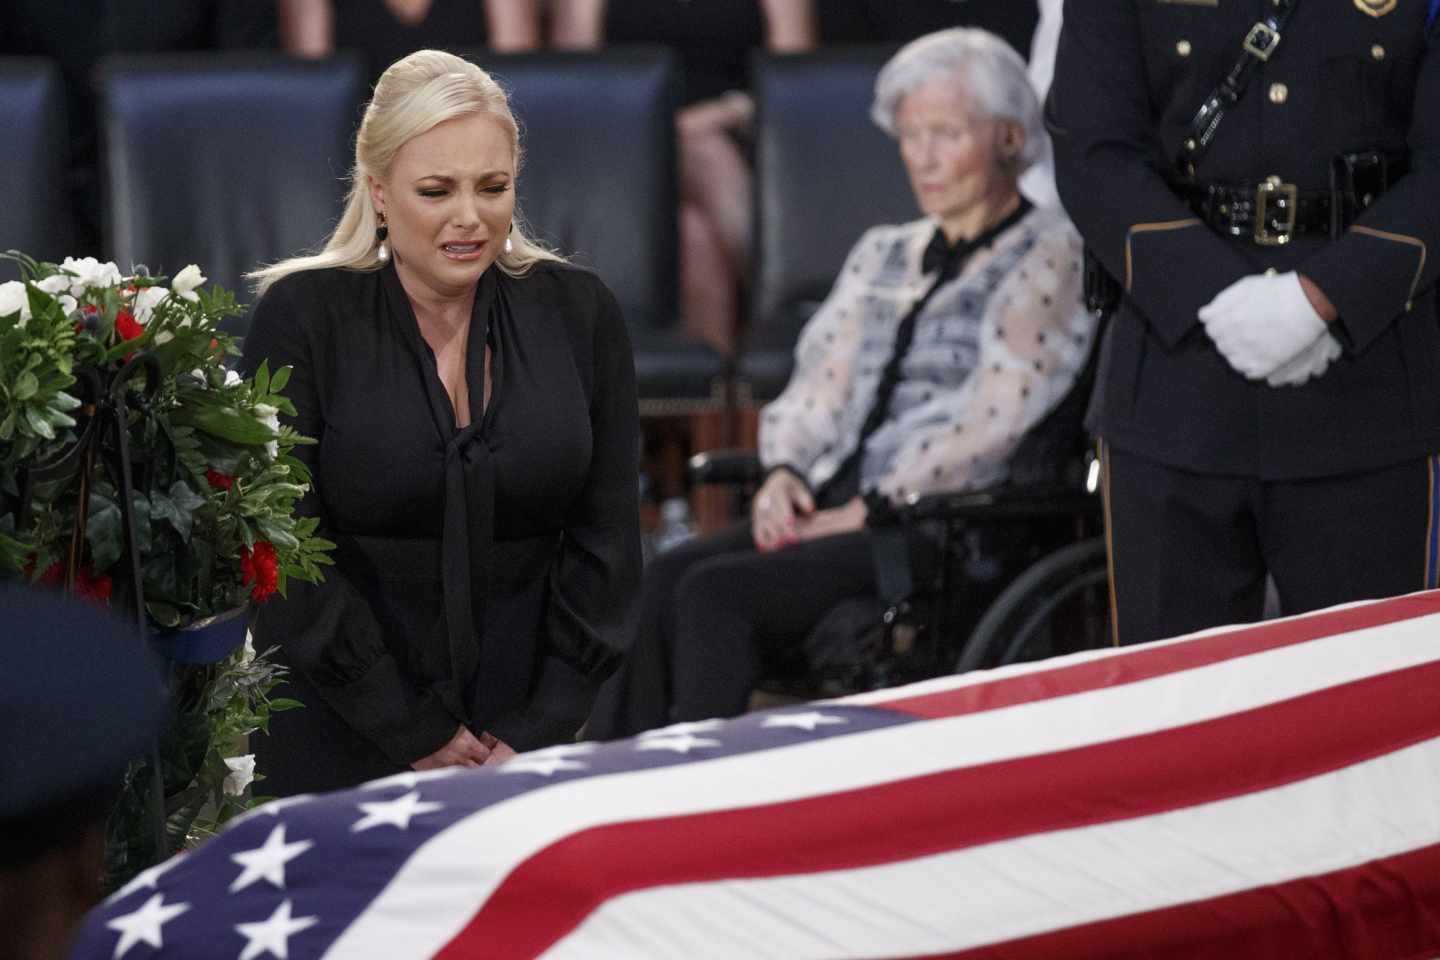 La hija de McCain, en su funeral: "La América de mi padre ya era grande"